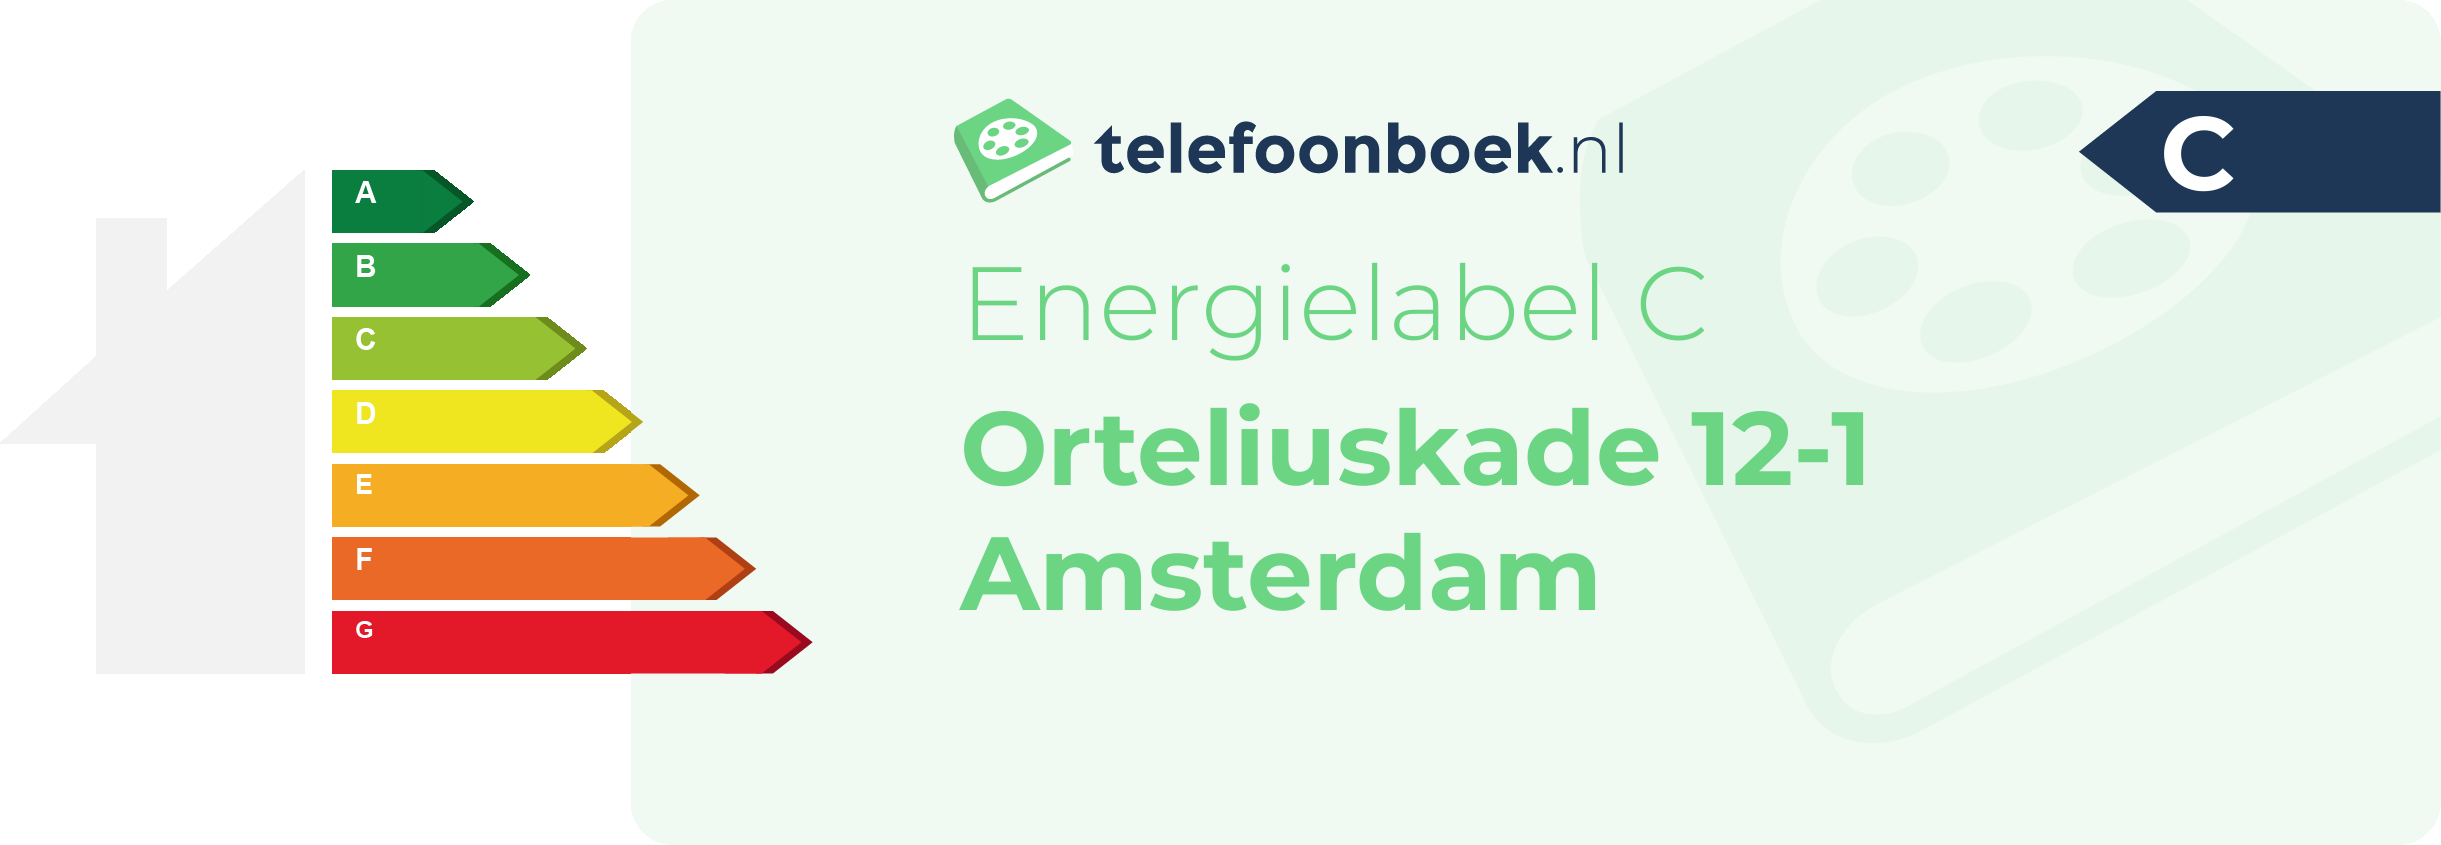 Energielabel Orteliuskade 12-1 Amsterdam